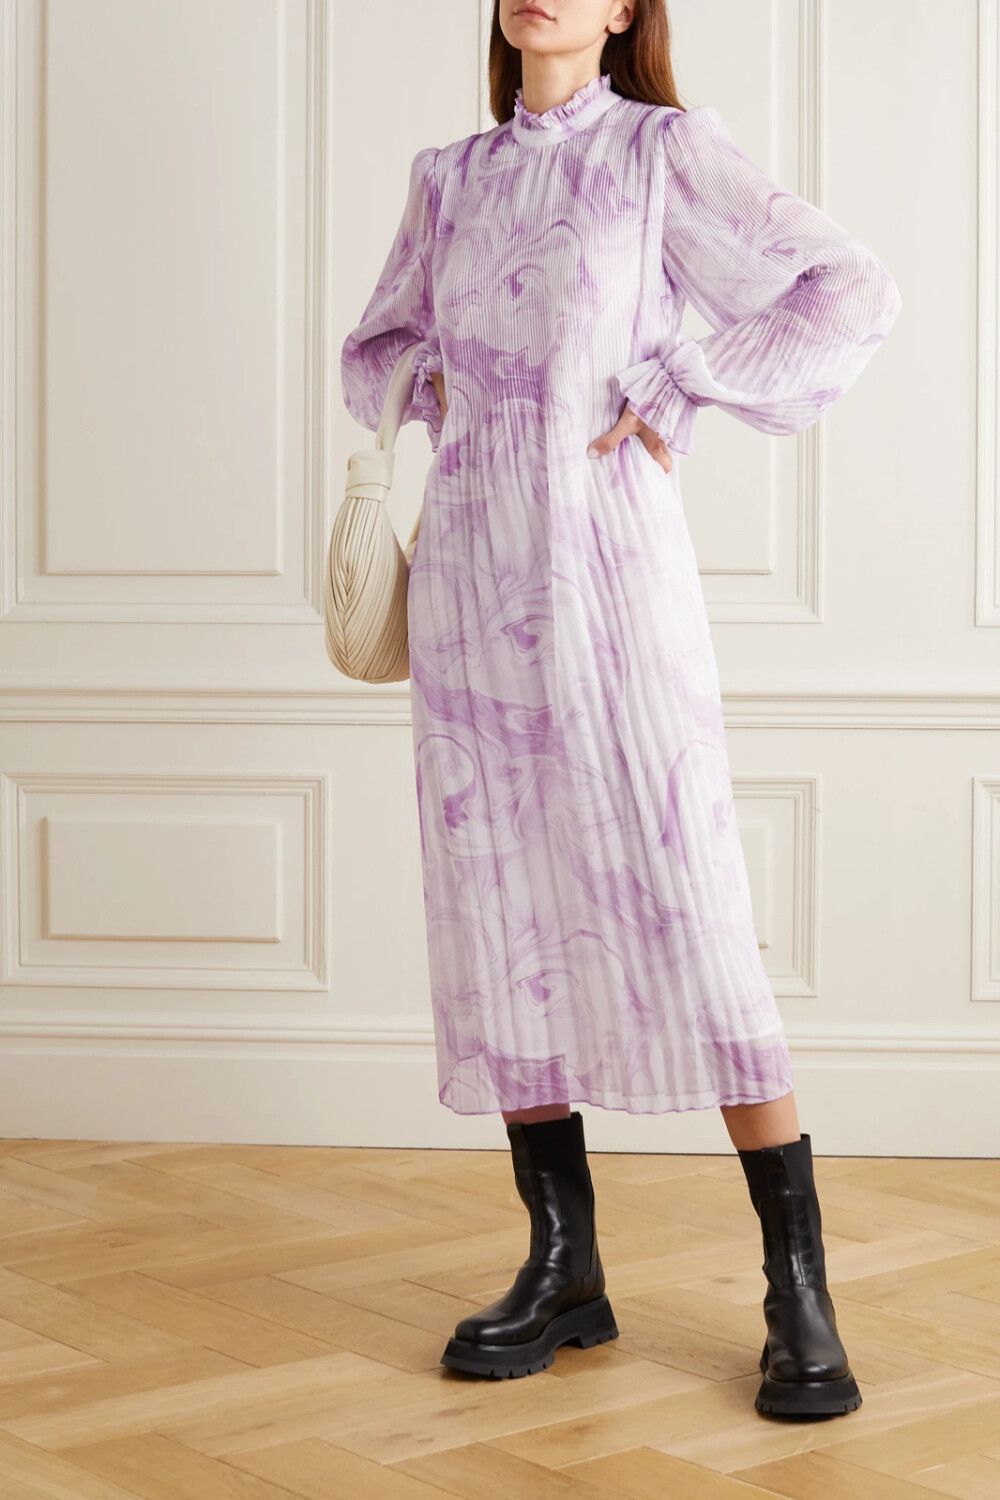 无论你将面临什么样的场合，总有一款 GANNI 连衣裙为你解决穿搭难题。这一版本出自 2021 春夏系列，它裁自轻盈顺滑的细褶乔其纱，宽松长袖增添浪漫气息，紫灰色大理石纹呼应本季主打元素。